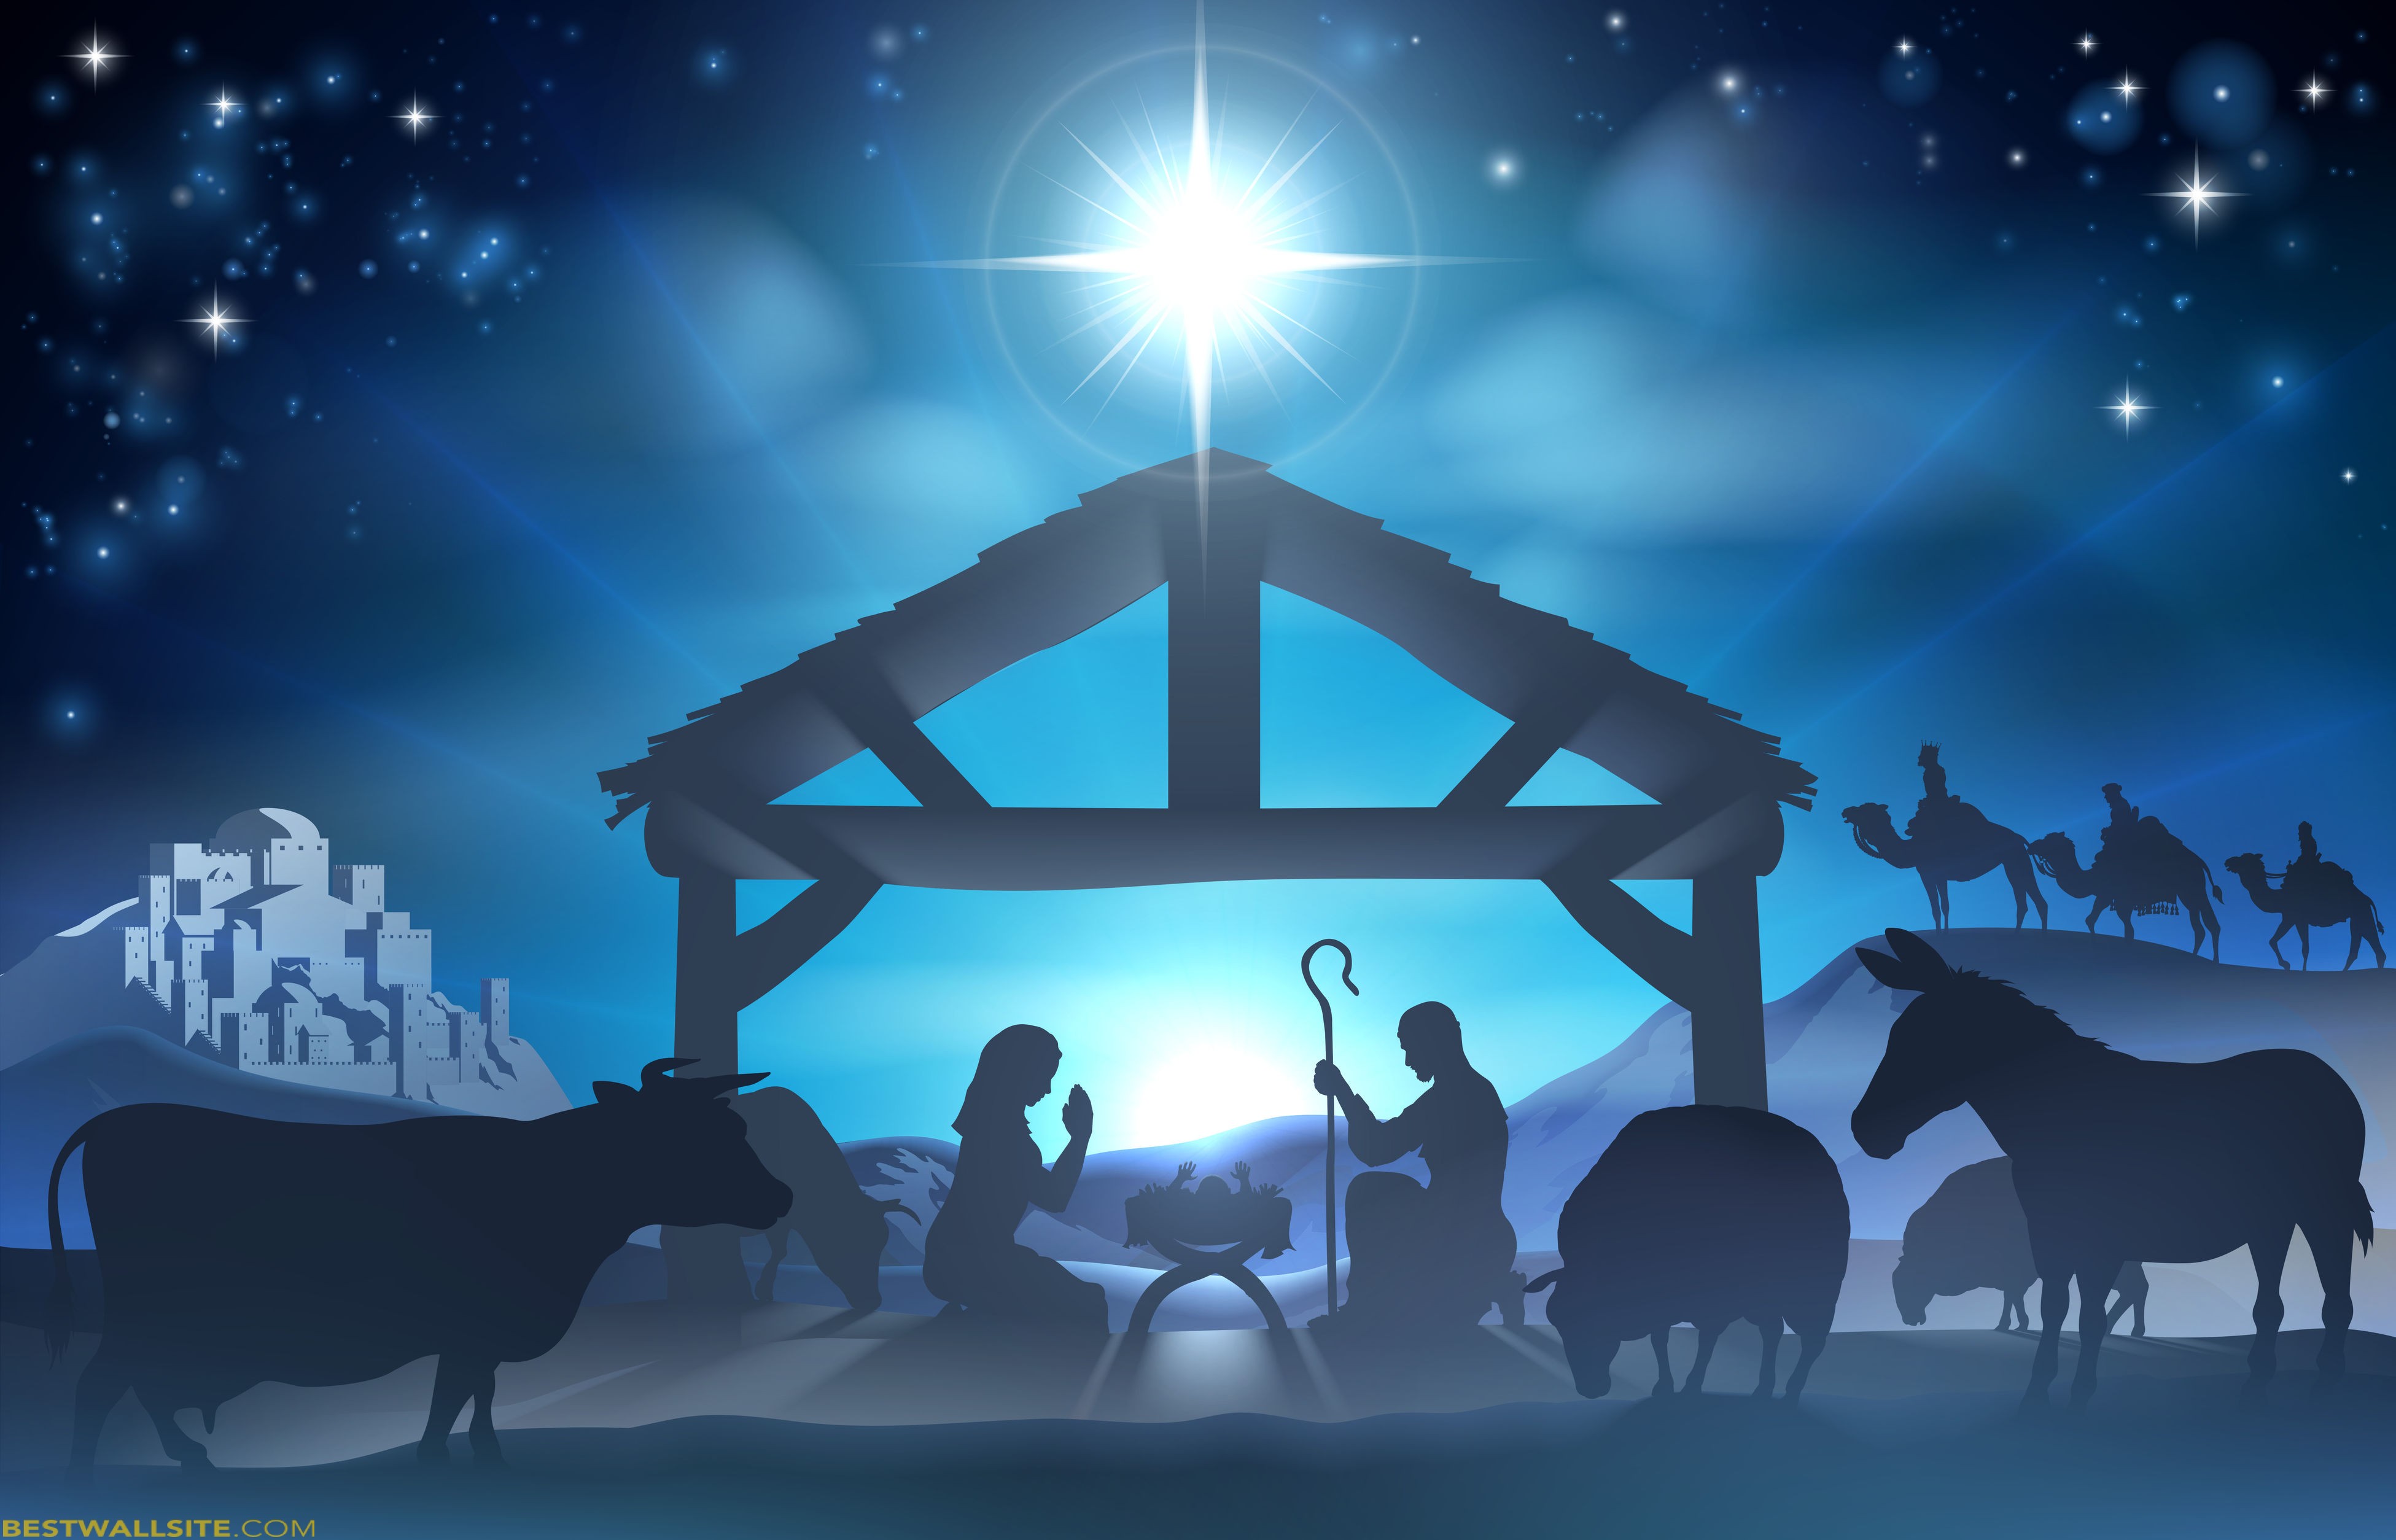 Christmas nativity scene wallpaper